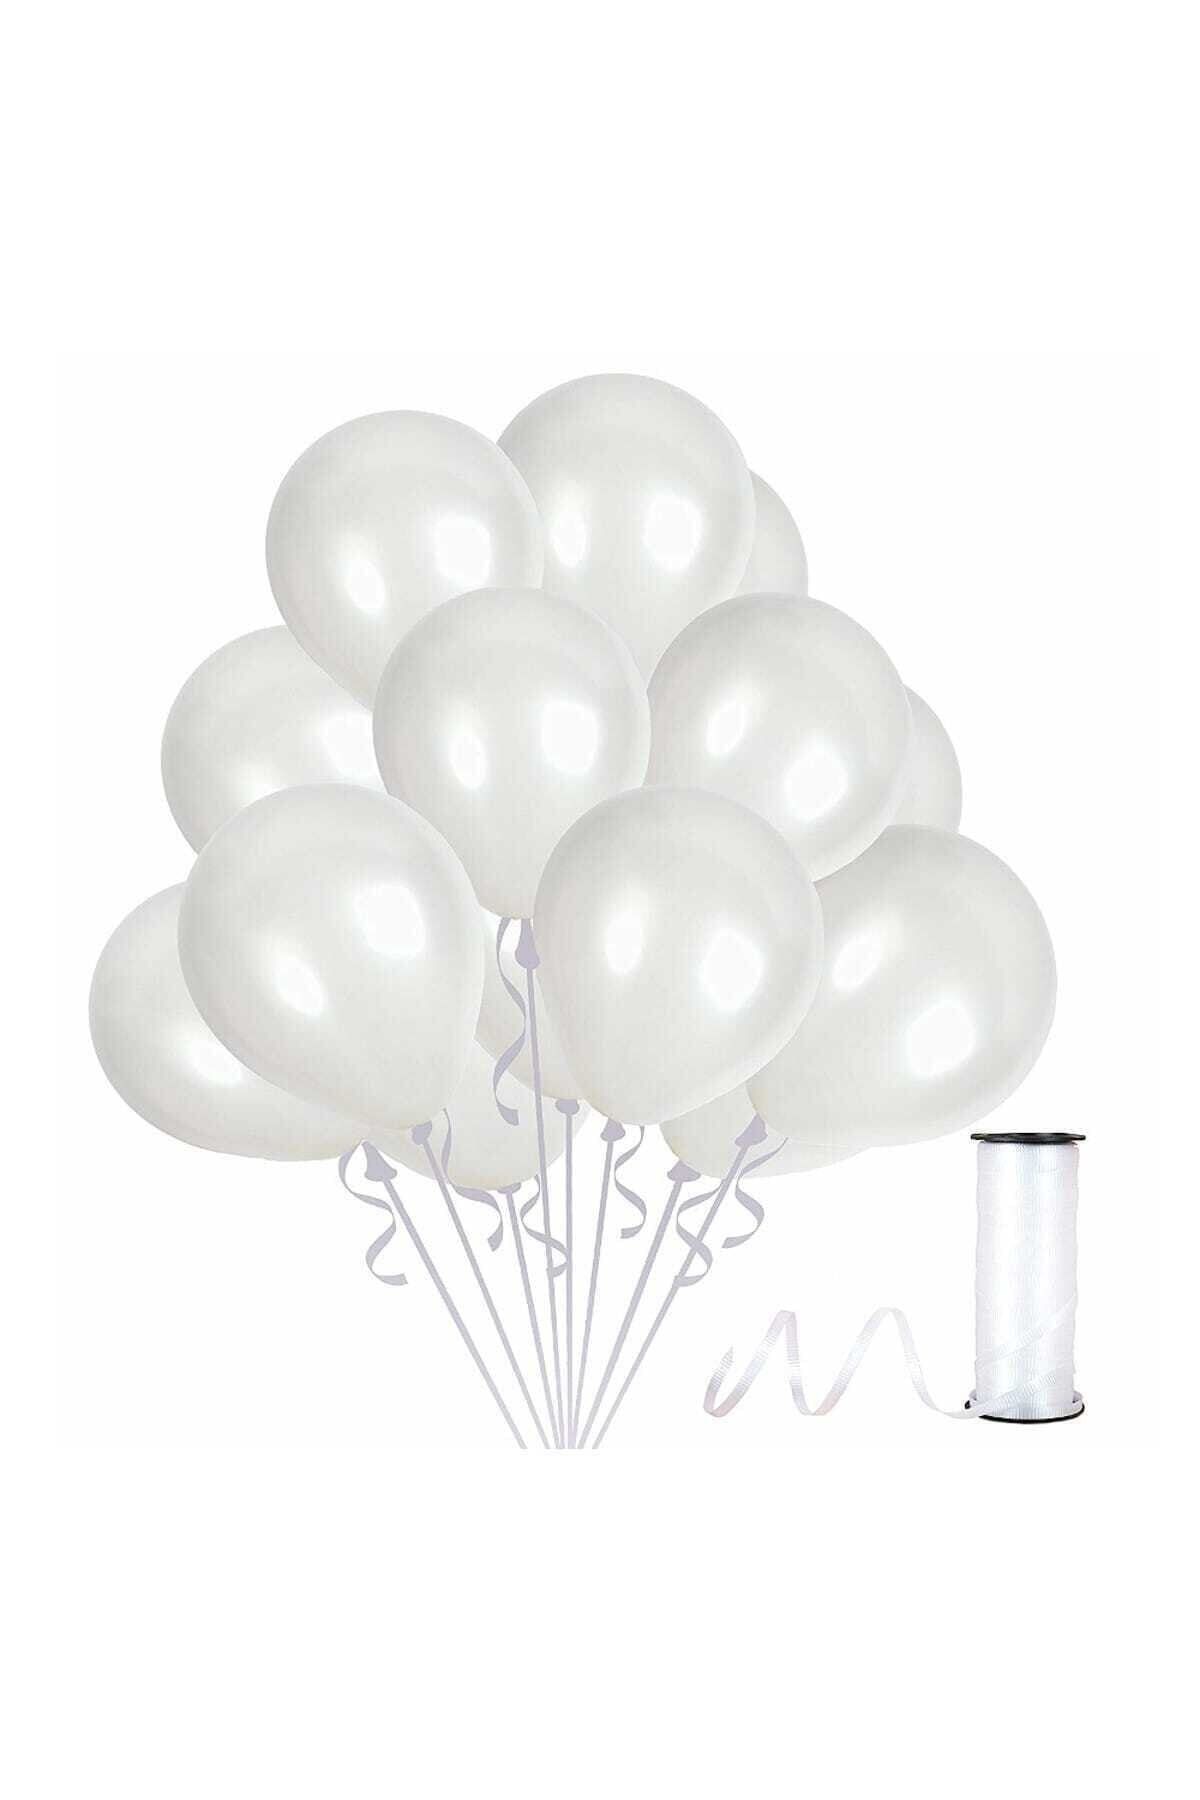 Magic Hobby Beyaz Renk Metalik Balon 50 Adet ( 50'li Paket)